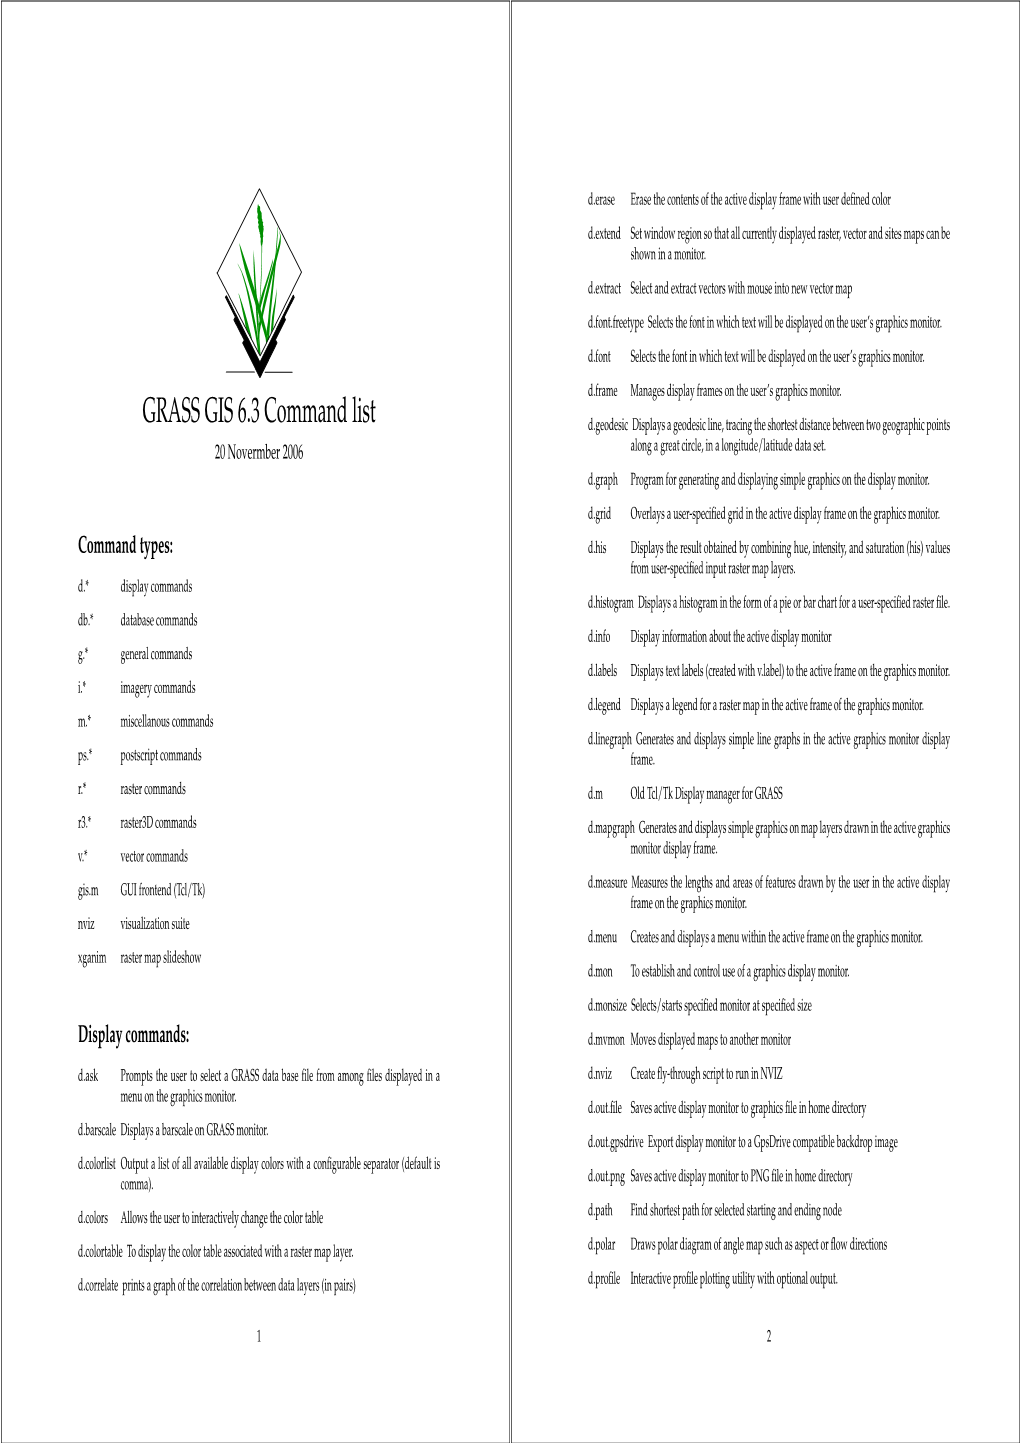 GRASS GIS 6.3 Command List